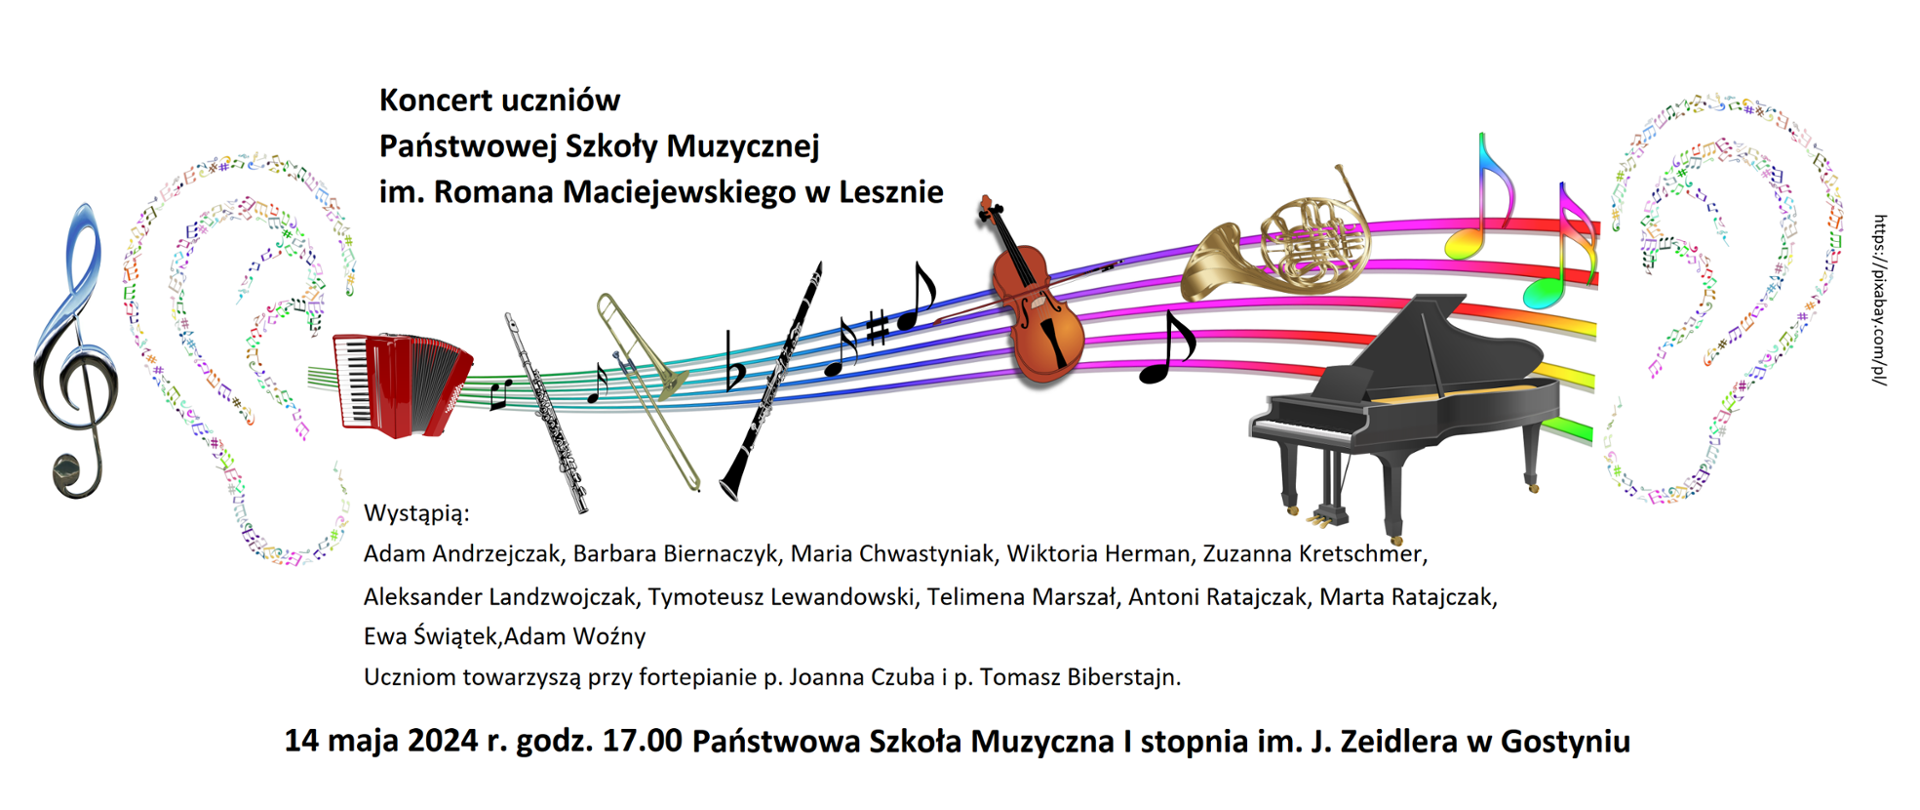 Koncert uczniów PSM w Lesznie, którzy wystąpią w PSM w Gostyniu, z rysunkiem instrumentów